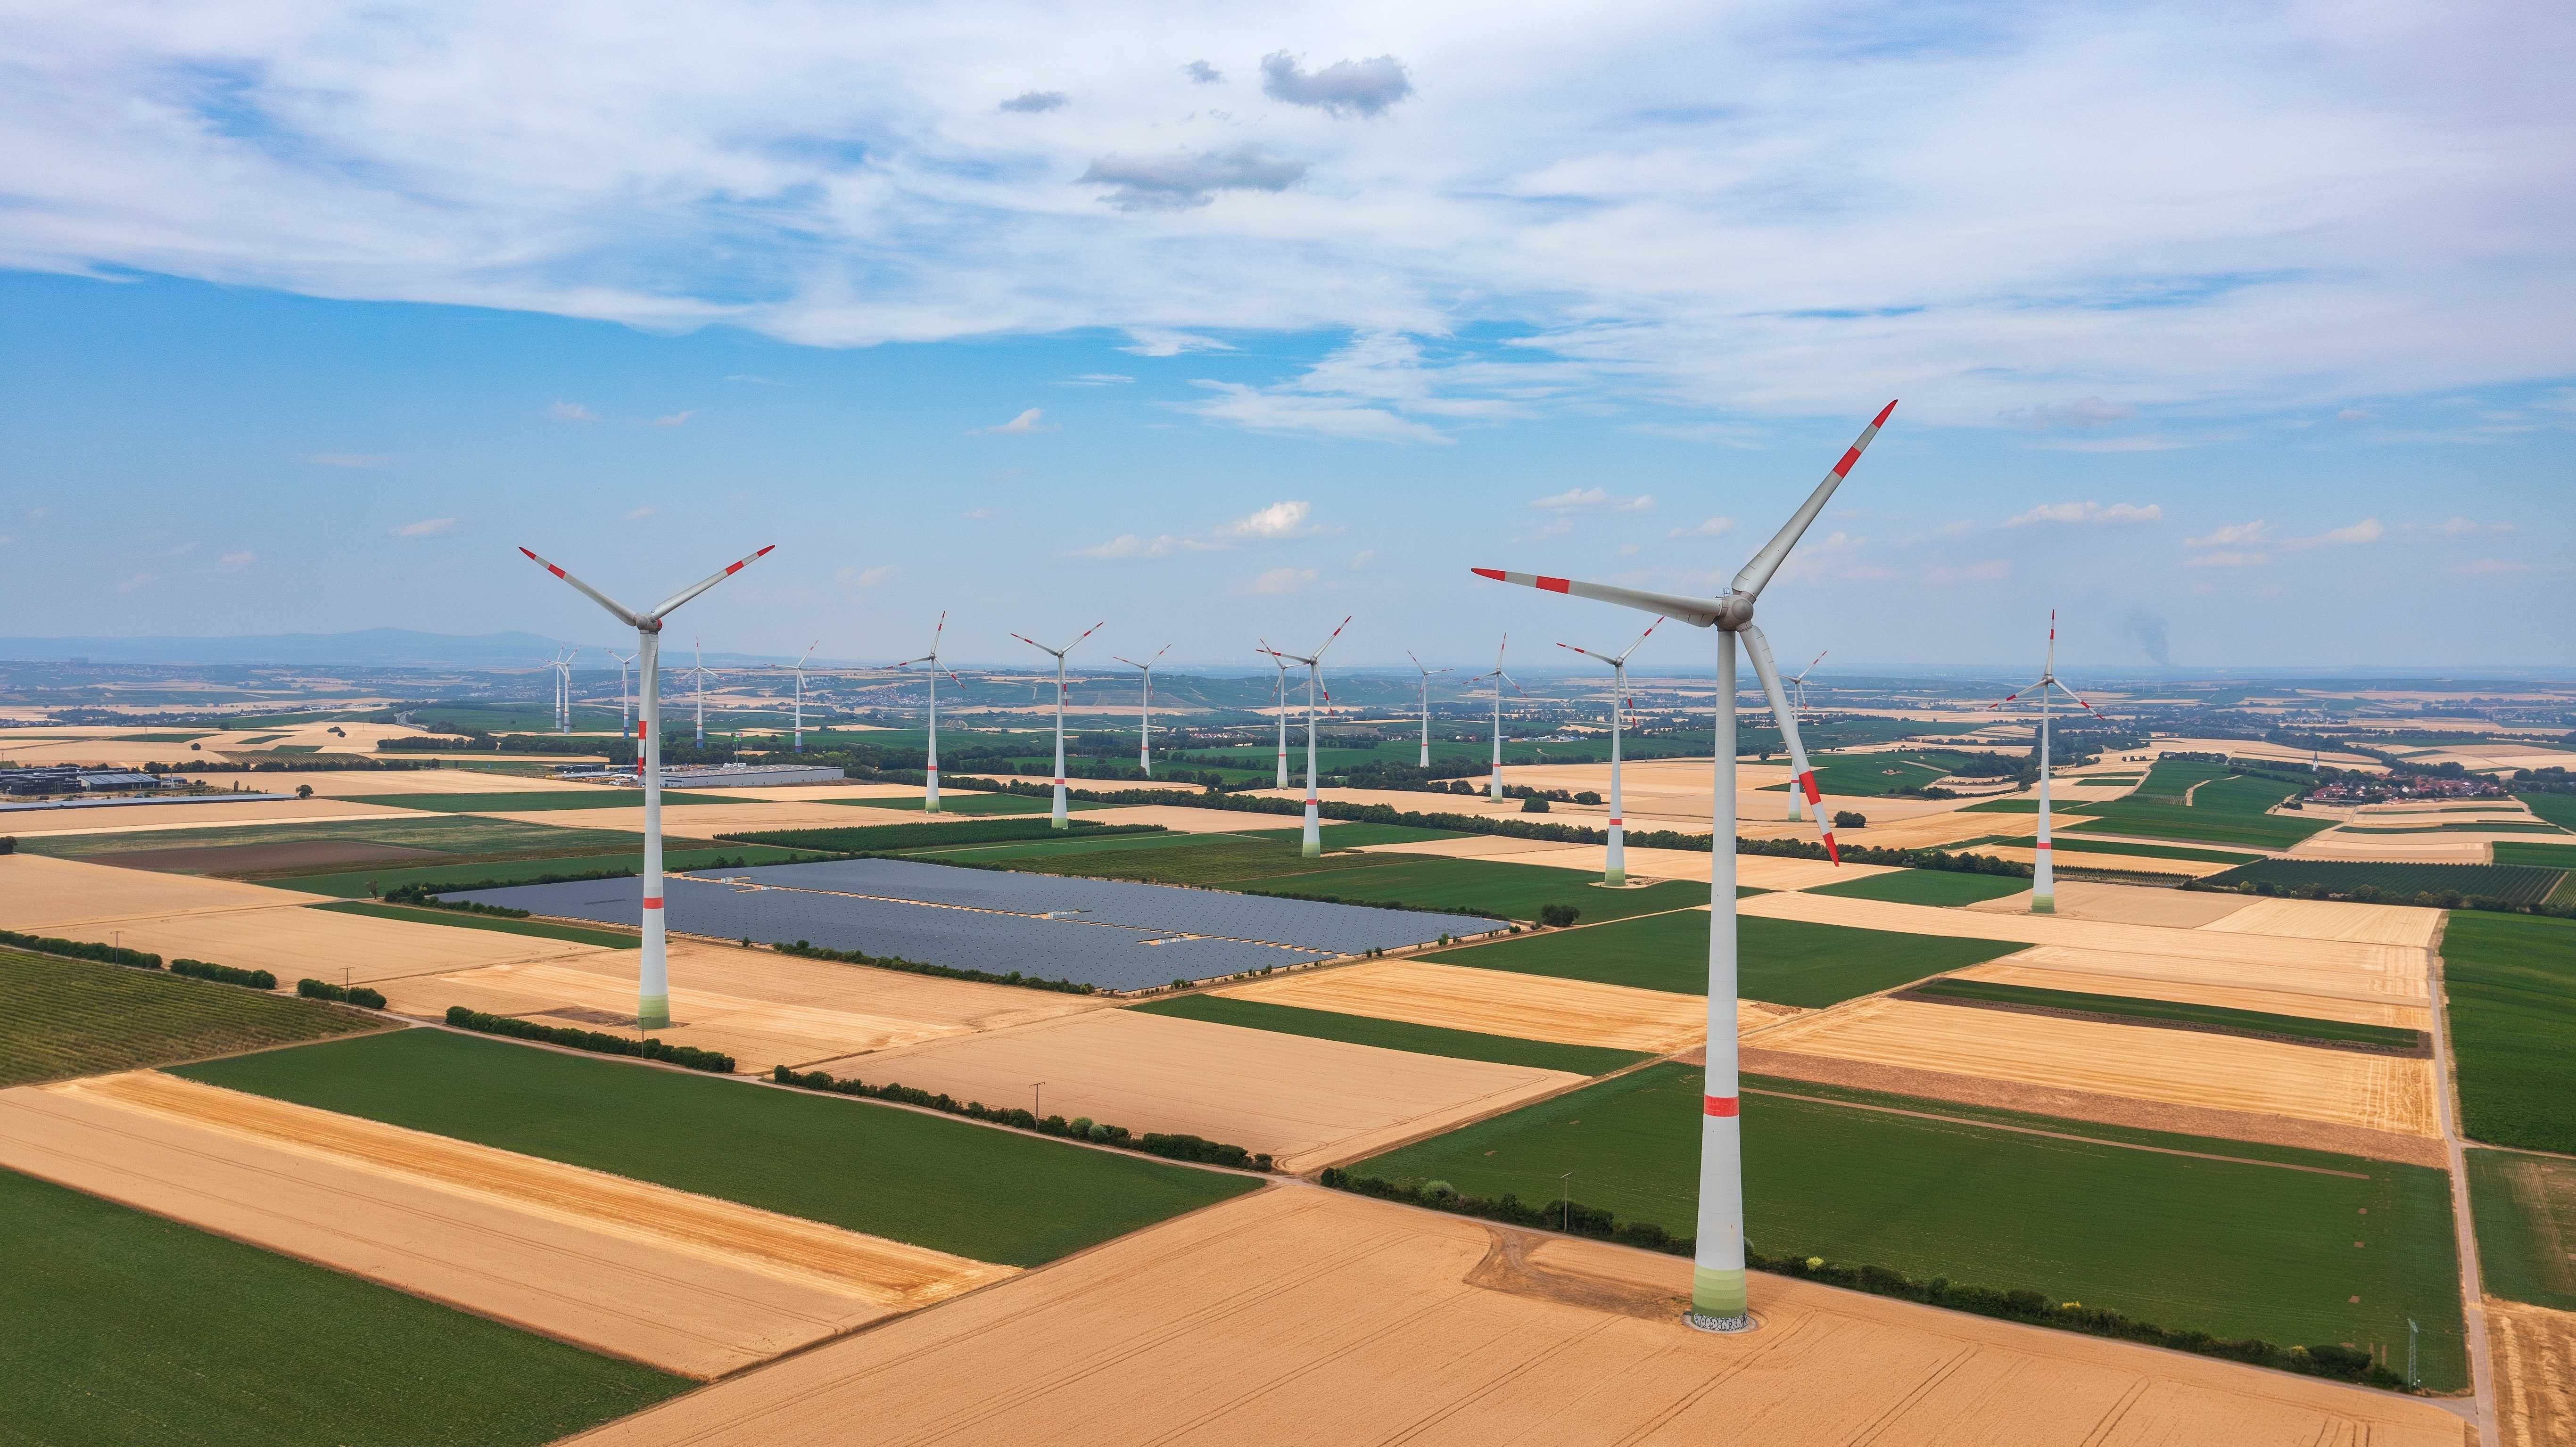 Windpark und Solaranlage in Getreidefeldern bei Wörrstadt, Rheinland-Pfalz